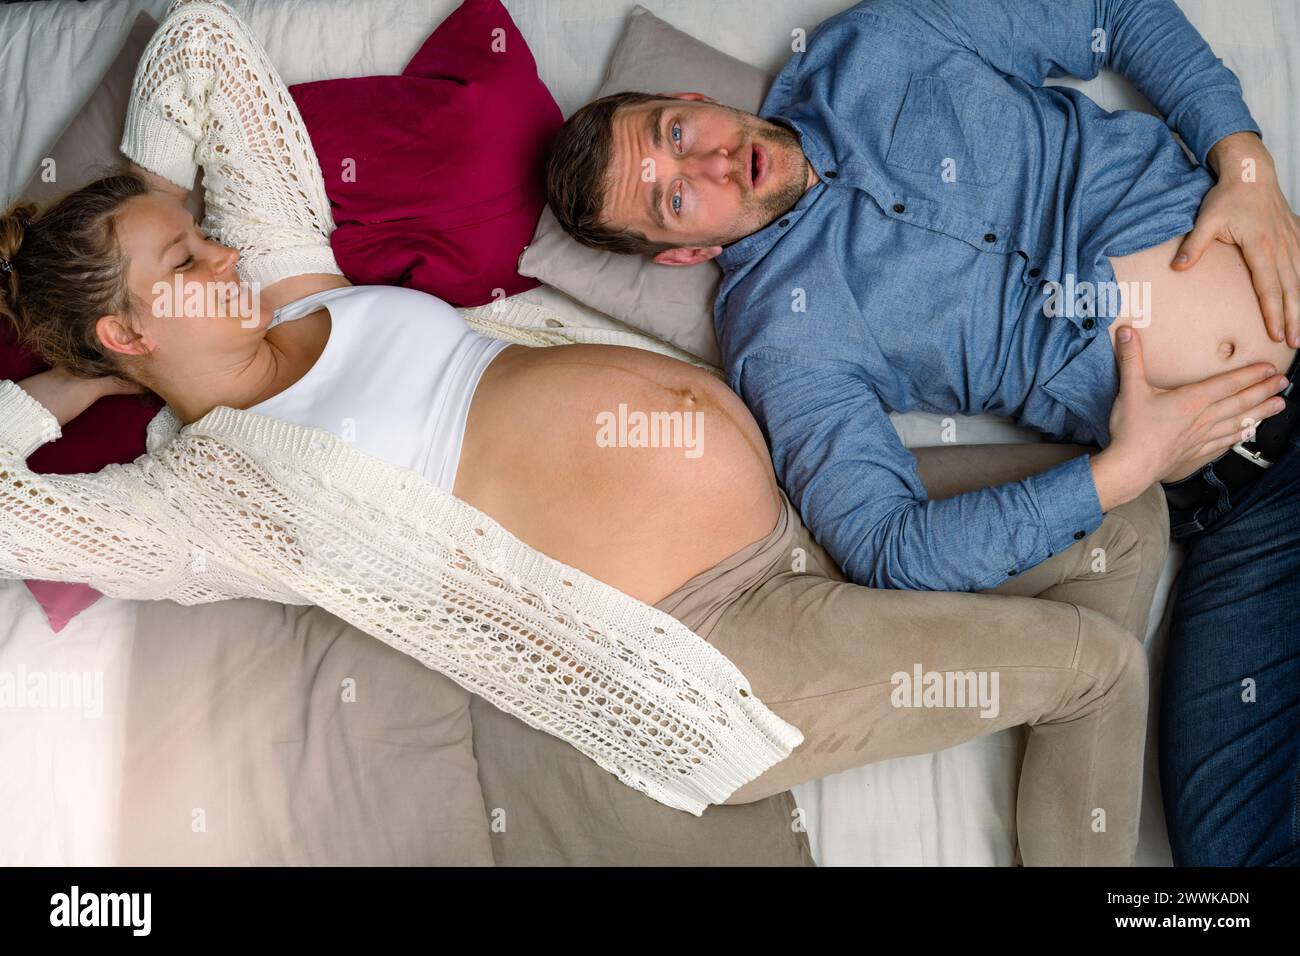 Beschreibung: Werdende Eltern liegen auf dem Sofa und der kopregnante Vater hält den Magen. Brillante Aufnahme. Stockfoto